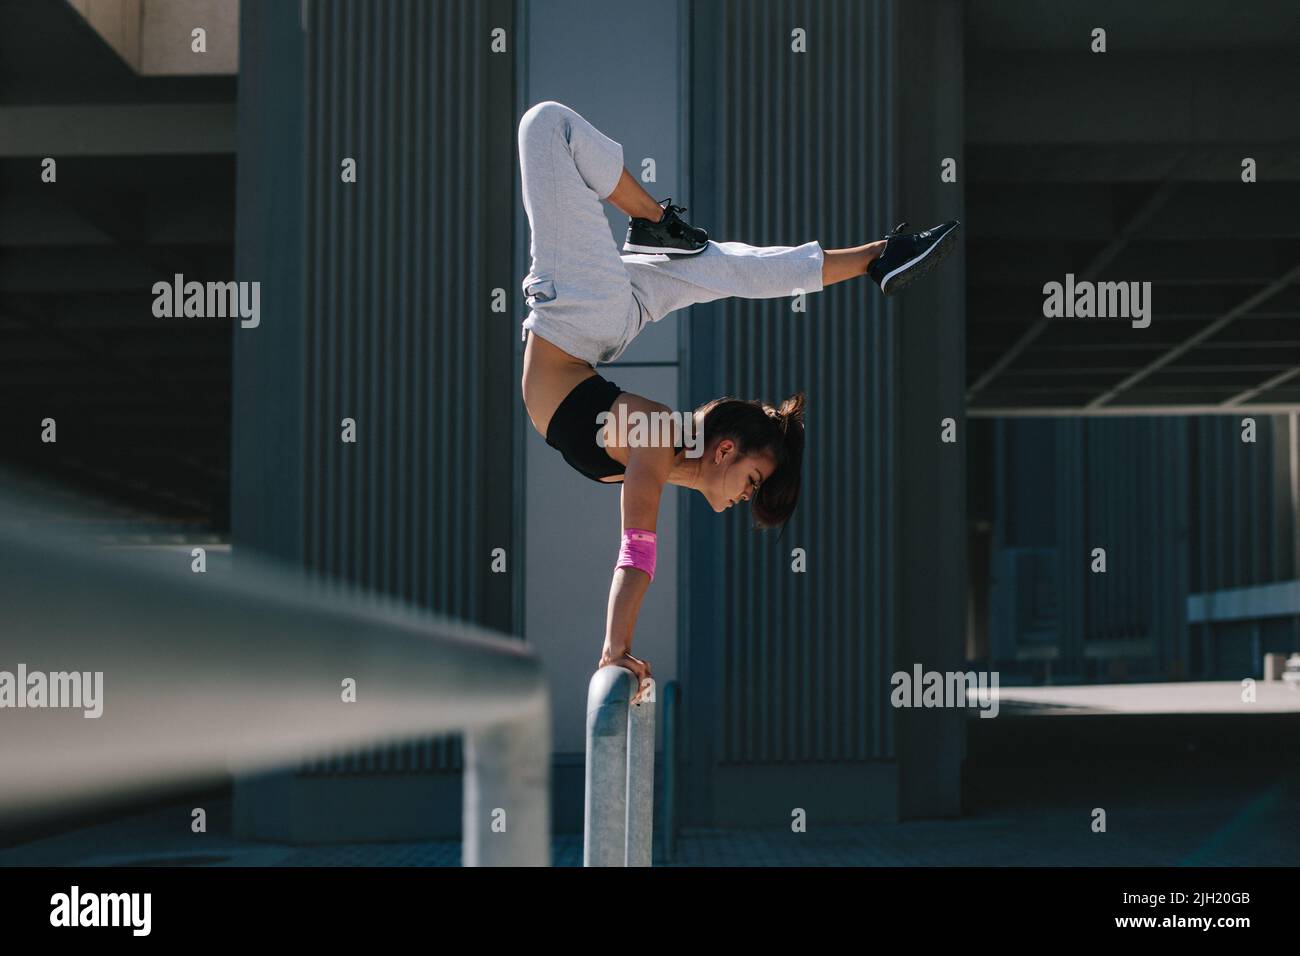 Sportlerin, die einen Handstand auf Geländer im Freien macht. Flexible weibliche Athletin, die Extremsport in einem städtischen Raum ausführt. Stockfoto